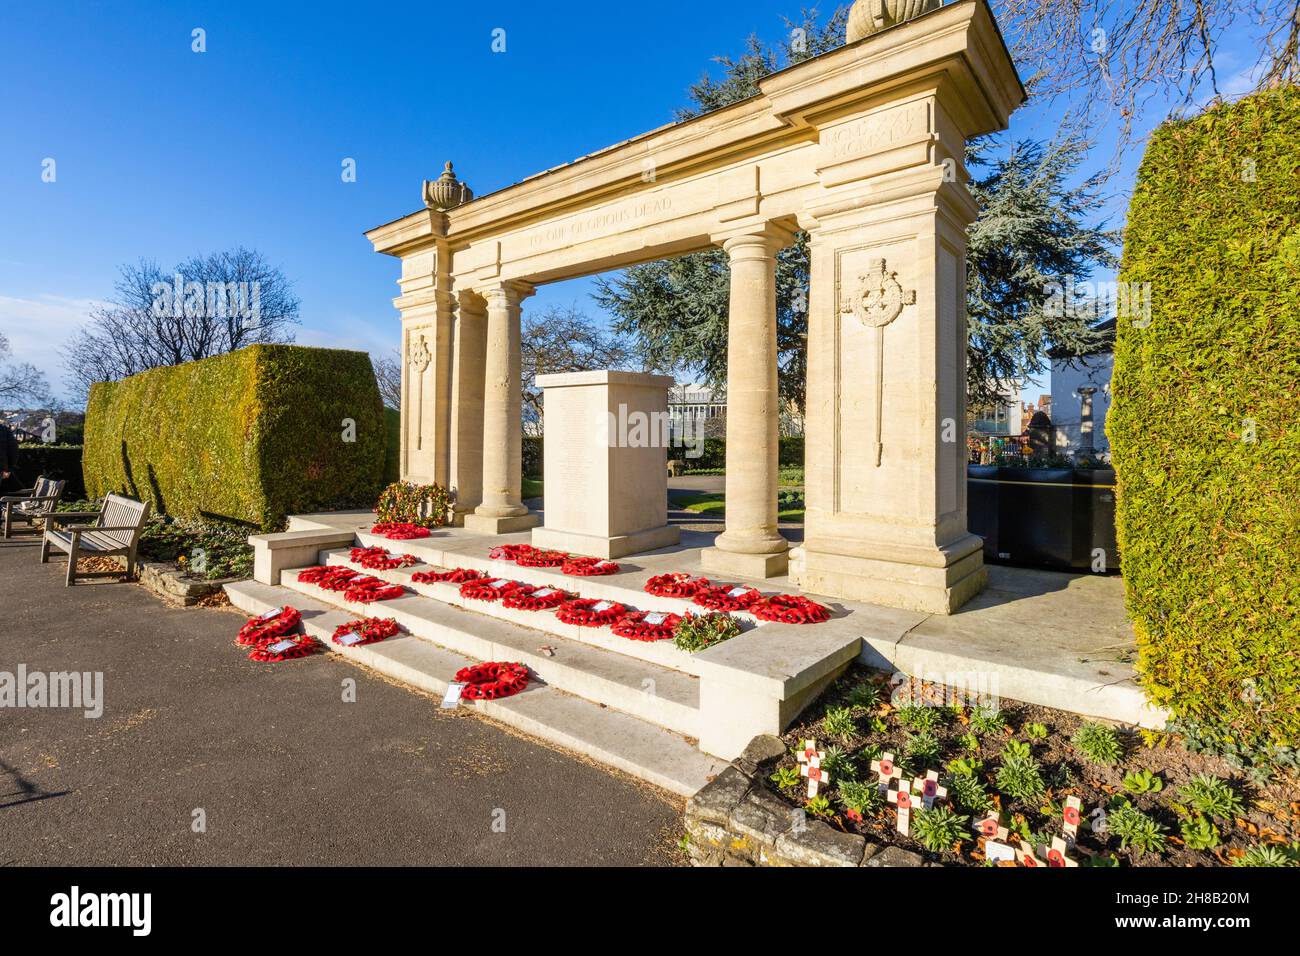 Monumento conmemorativo de la Segunda Guerra Mundial en los terrenos del castillo de Guildford con guirnaldas de amapola roja recién lanzadas, Guildford, Surrey, sudeste de Inglaterra Foto de stock